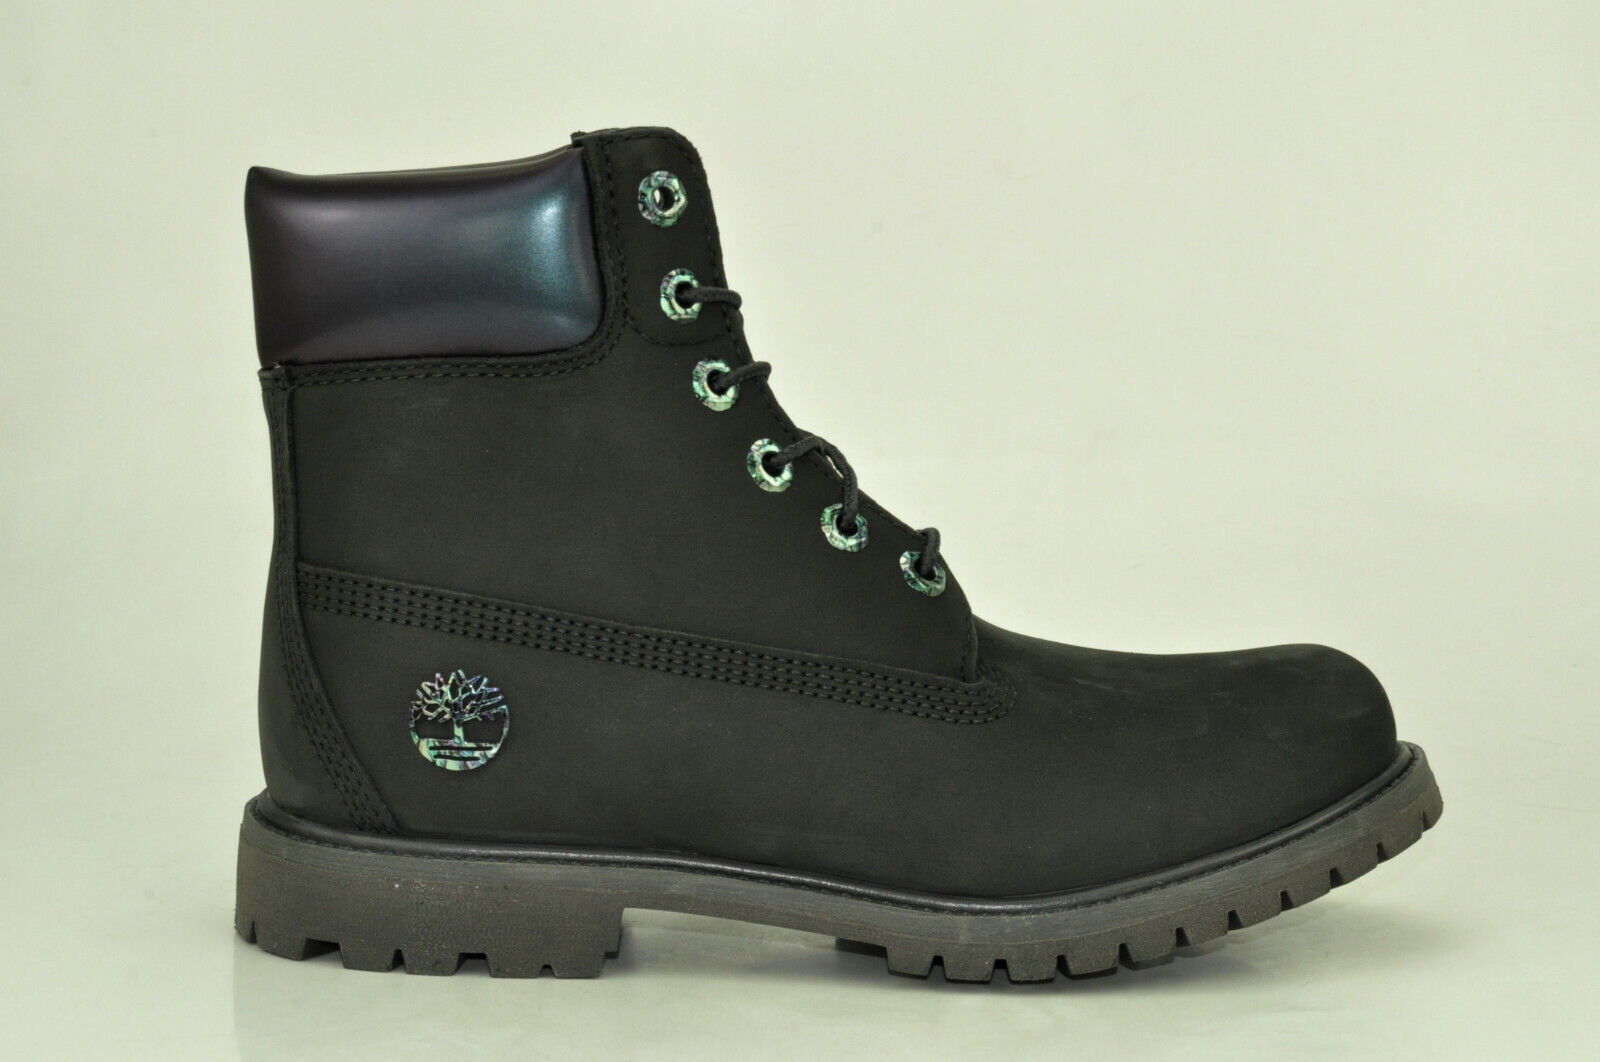 Timberland 6 Inch Premium Boots Waterproof Stiefel Damen Schnürstiefel A24J8 Schuhgröße EUR 41 US 9,5